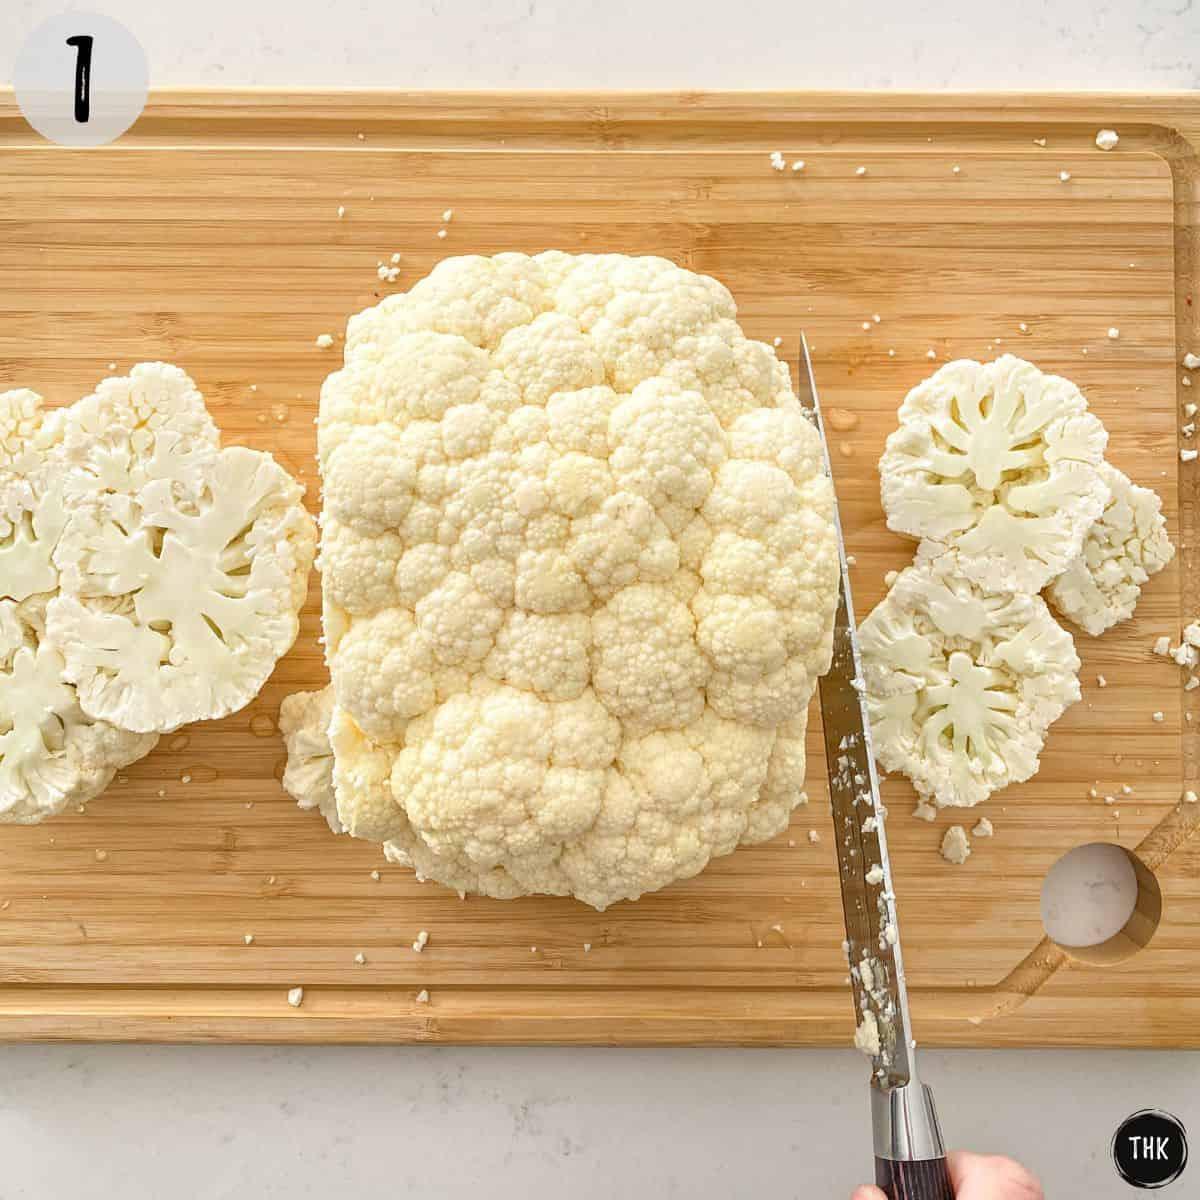 Cauliflower head on cutting board being sliced.